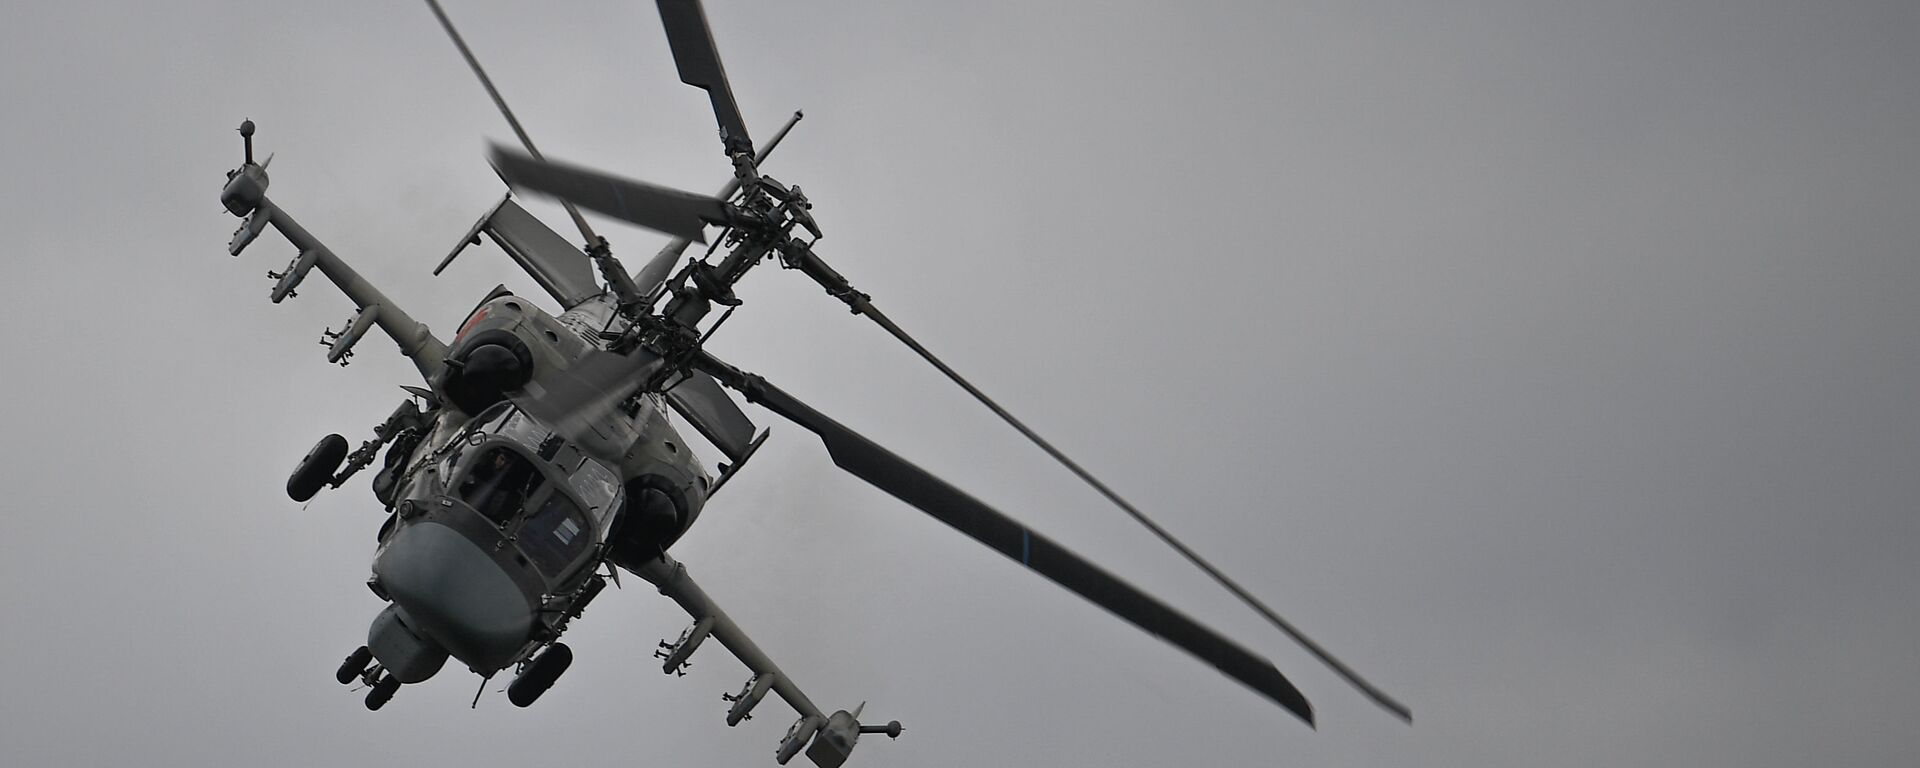 Ударный вертолет Ка-52 Аллигатор выполняет демонстрационный полет в рамках Международного форума Армия-2020 на аэродроме Кубинка в Подмосковье - Sputnik Казахстан, 1920, 08.12.2021